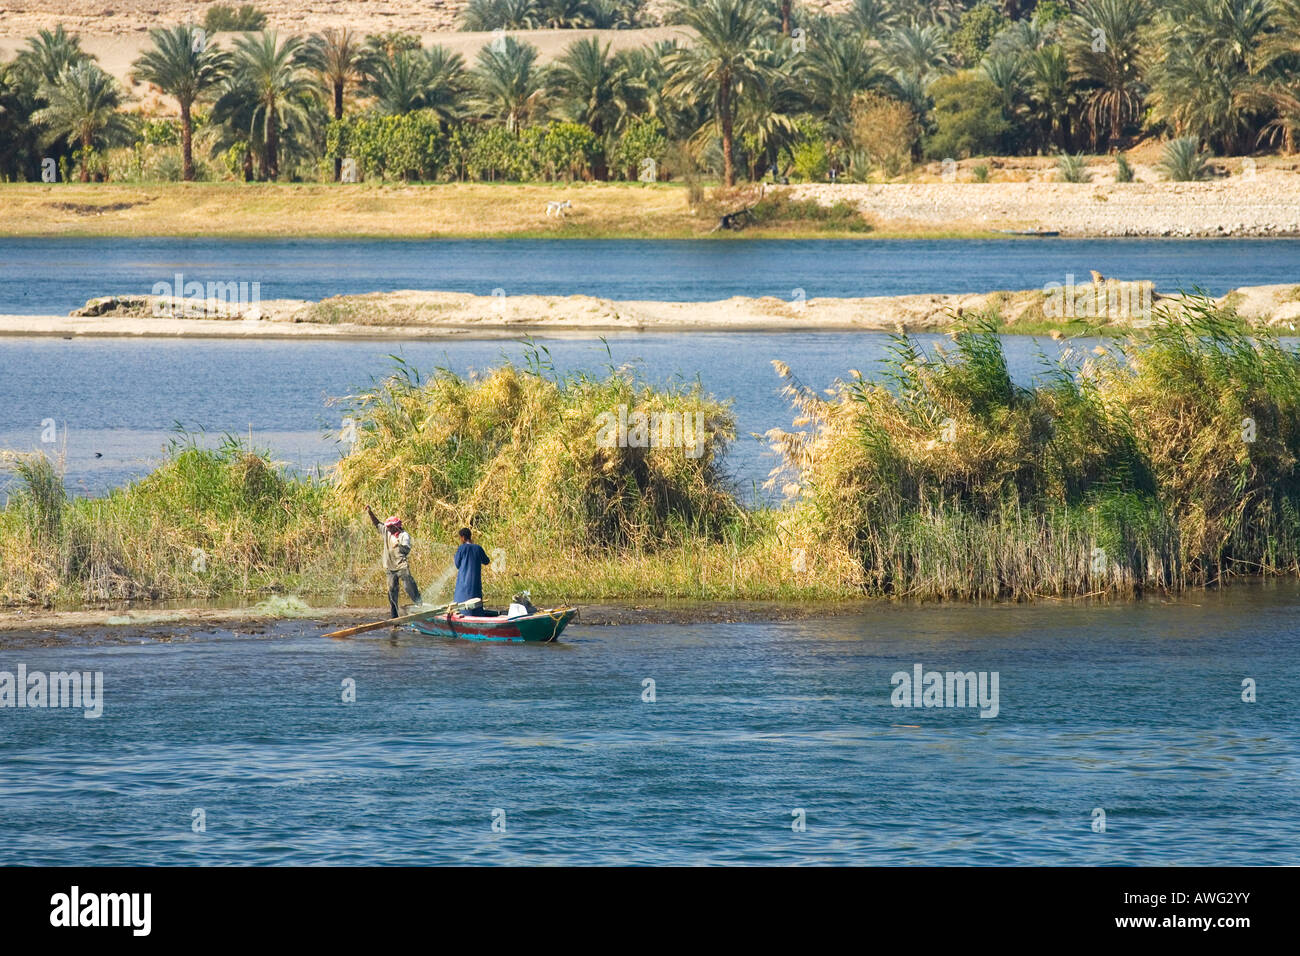 Los egipcios en un pequeño bote de pesca en el río Nilo Egipto África del Norte Foto de stock